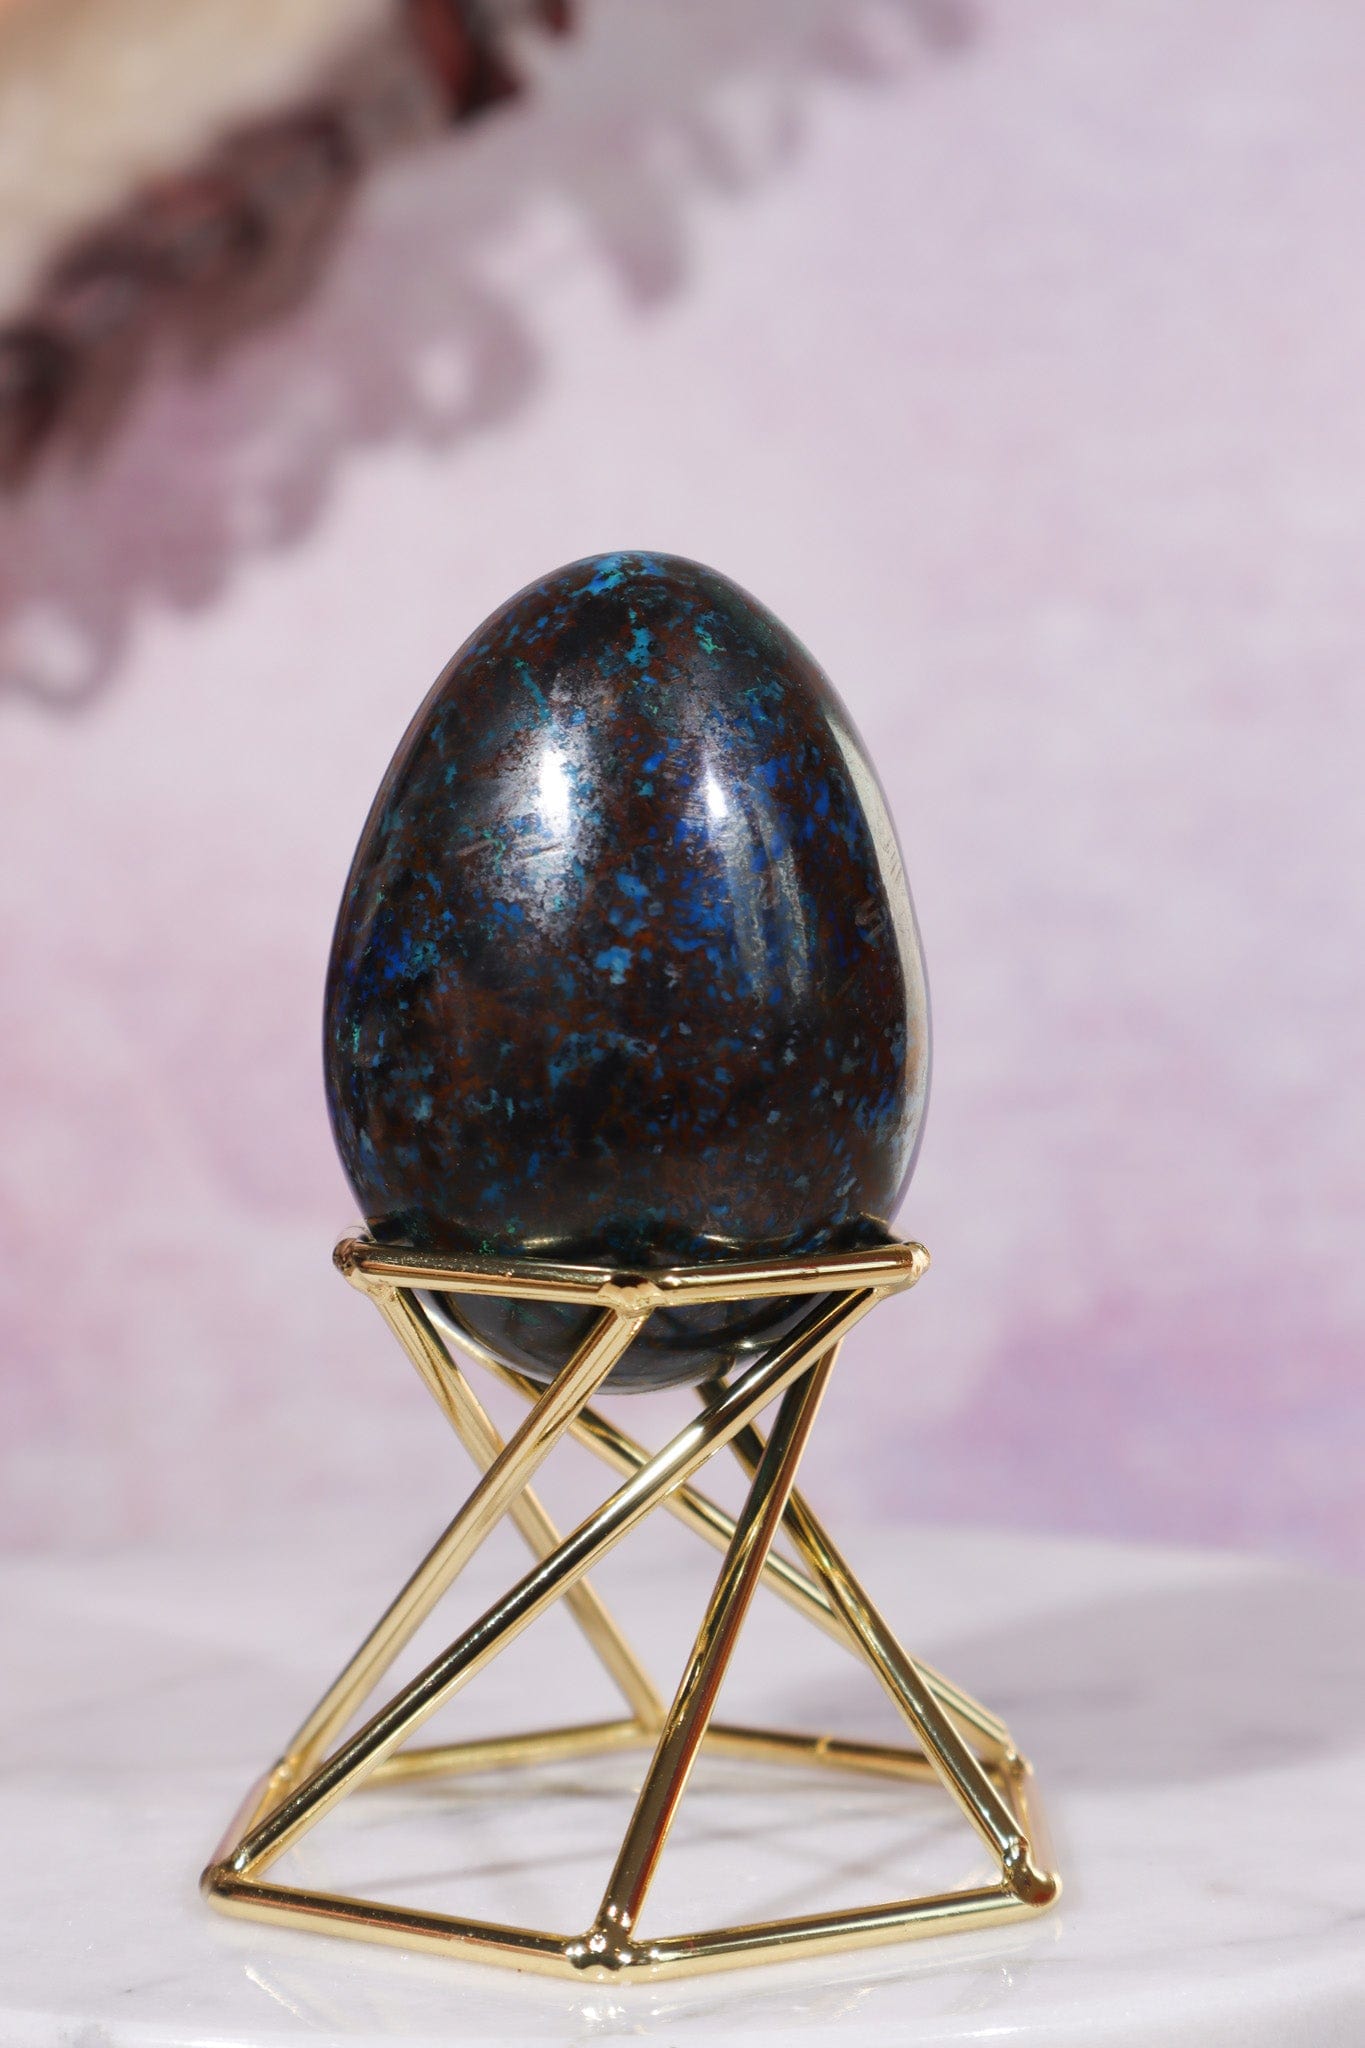 Shattuckite, Copper, Malachite Egg 5.5cm Eggs Tali & Loz Crystals